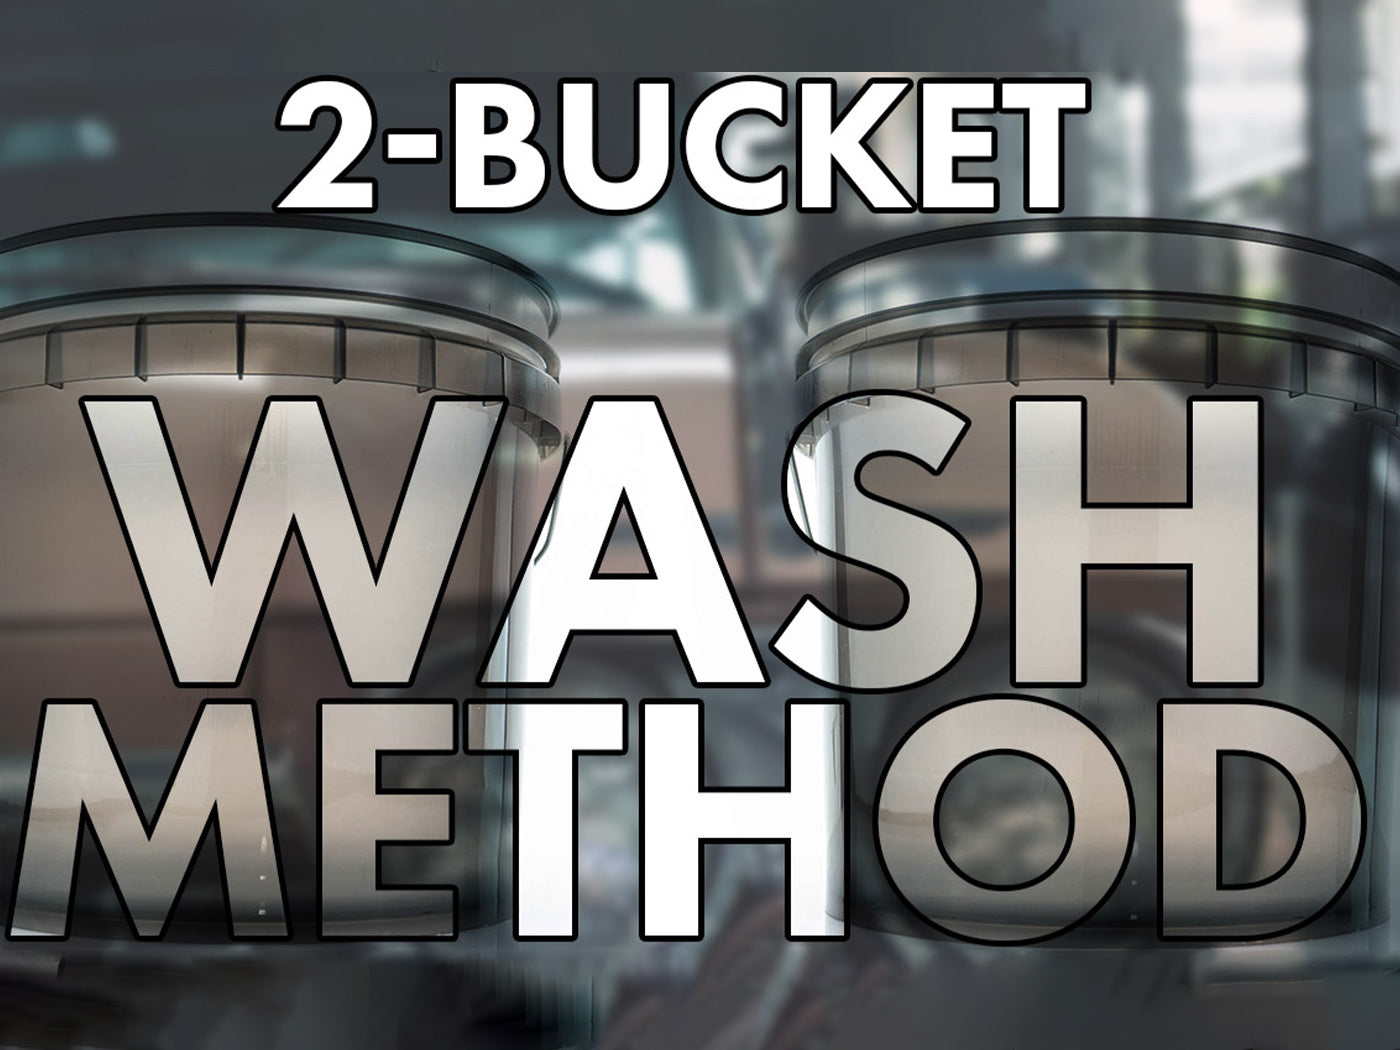 two-bucket-washing-method